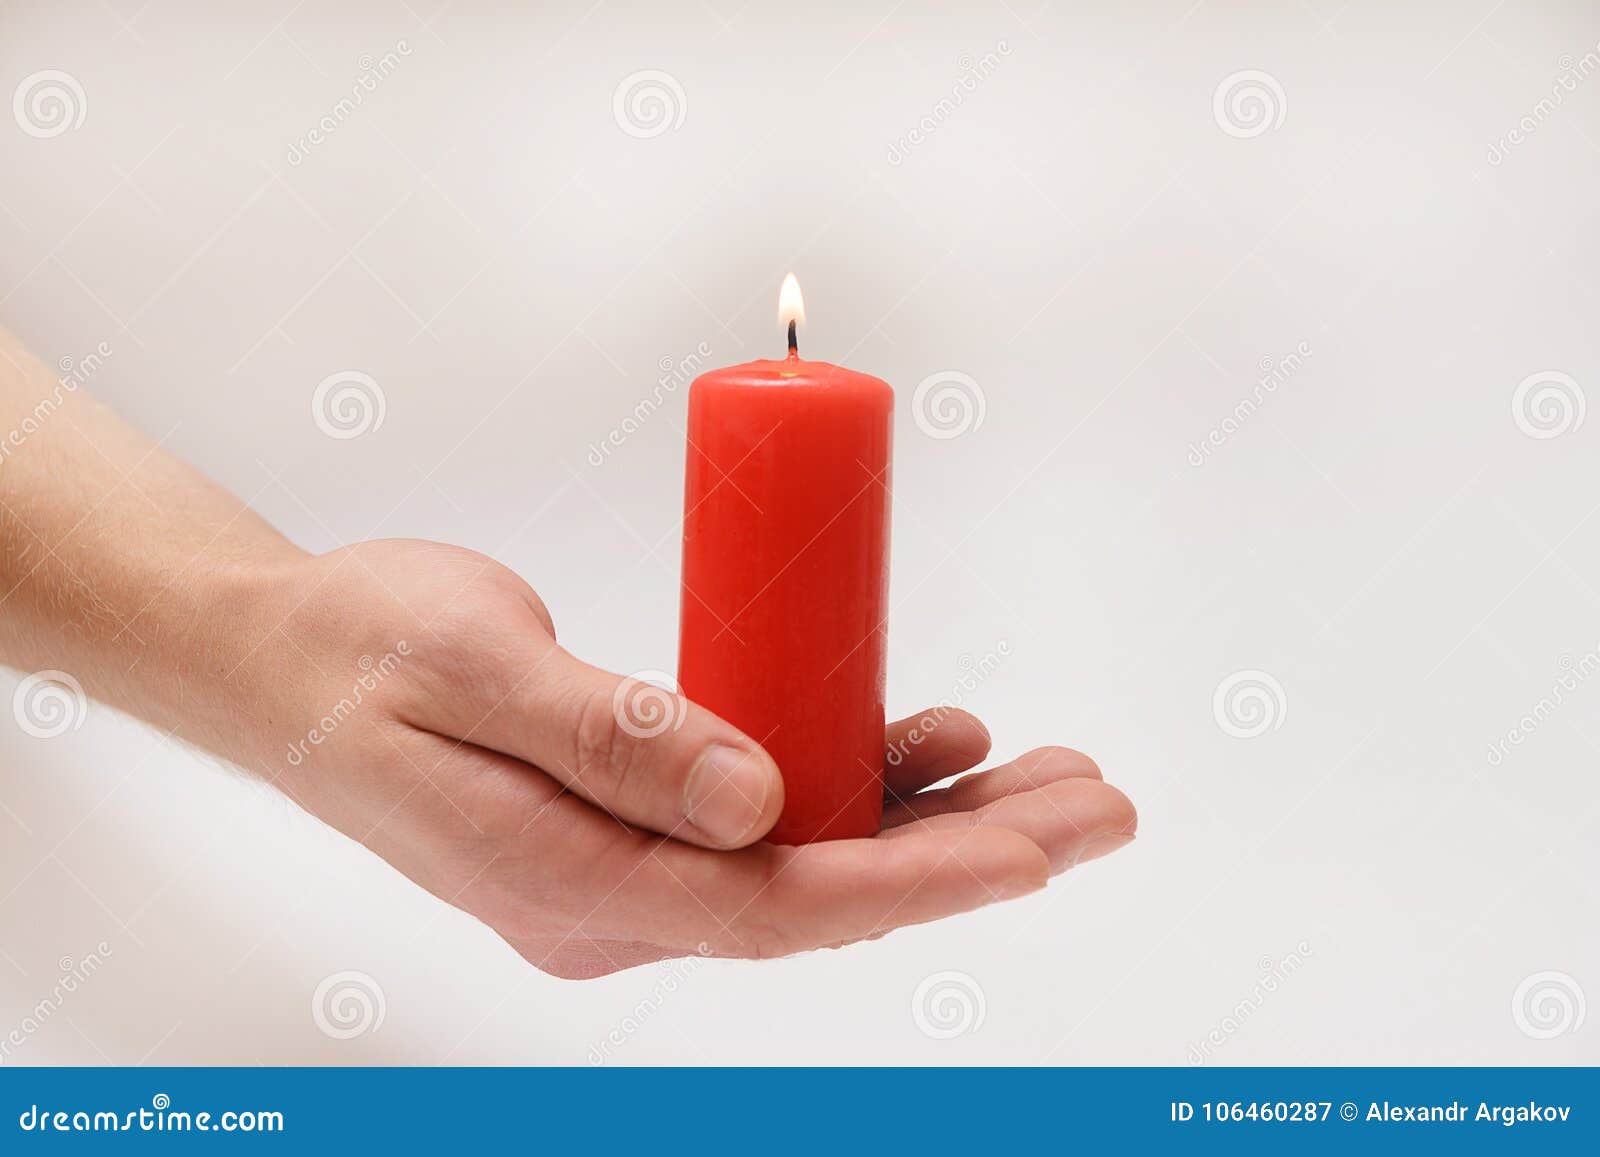 Красная свеча в руке. Рост красными свечами. Красные свечи на каноне. Женские руки держут красную свечу.